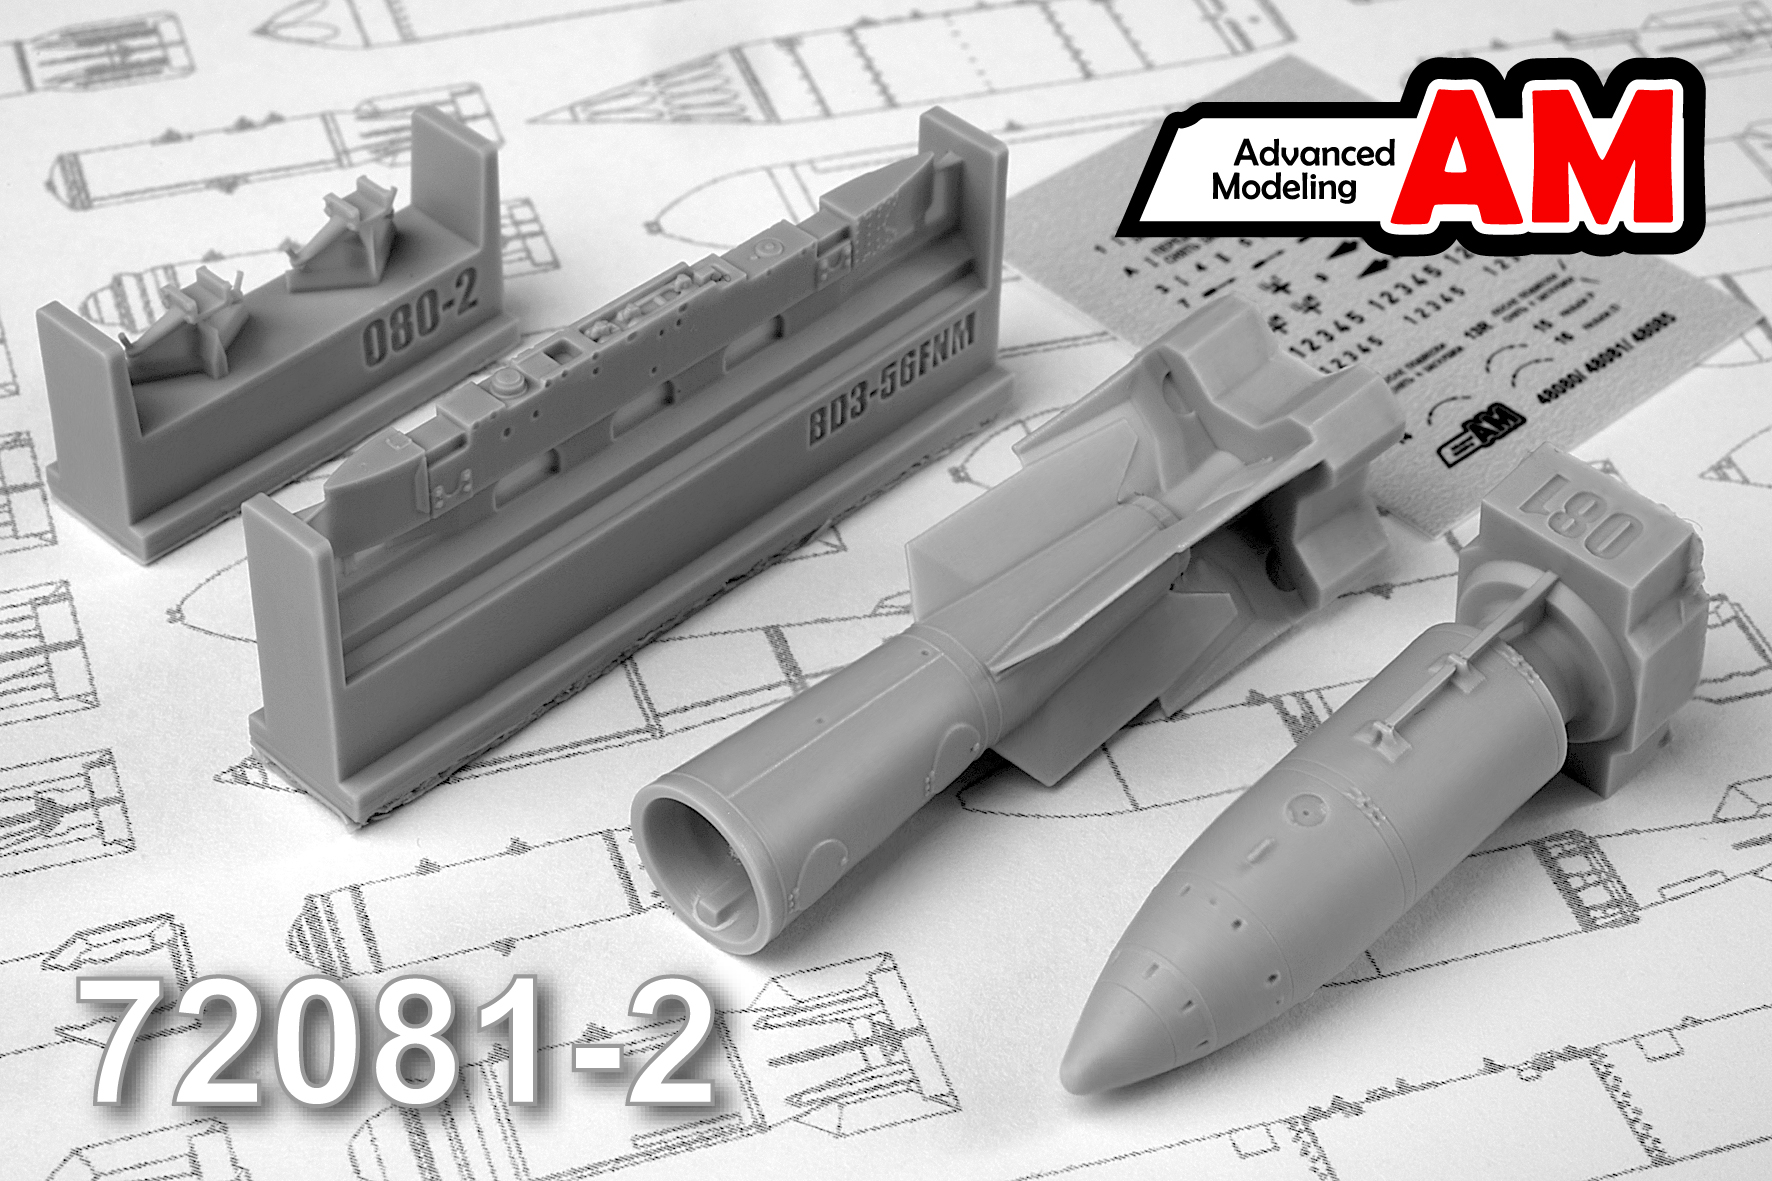 AMC 72081-2  дополнения из смолы  РН-28 спецбоеприпас с БД3-56ФНМ  (1:72)